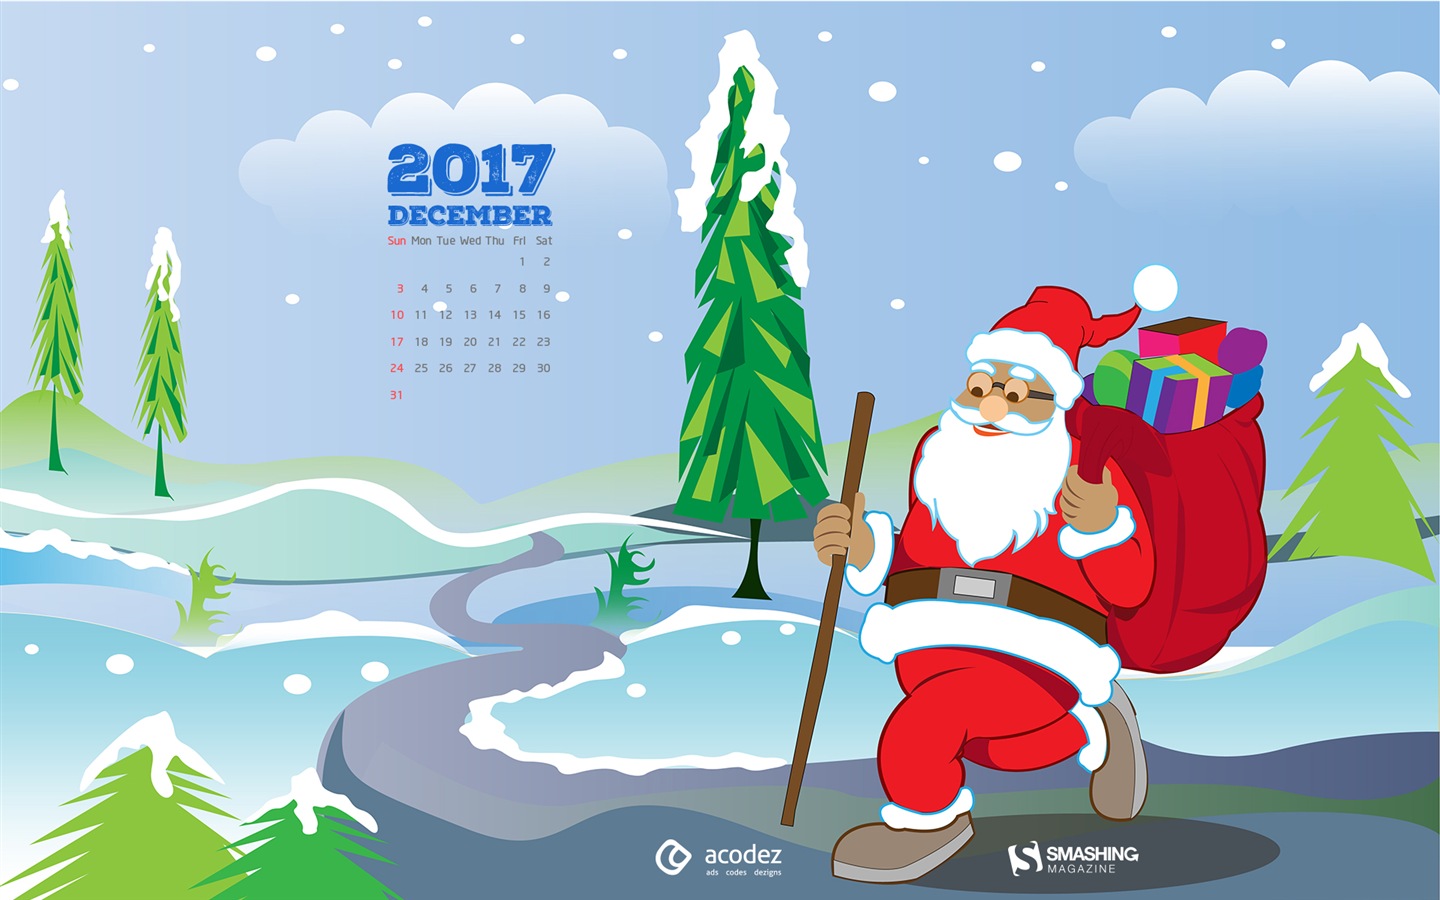 December 2017 Calendar Wallpaper #17 - 1440x900